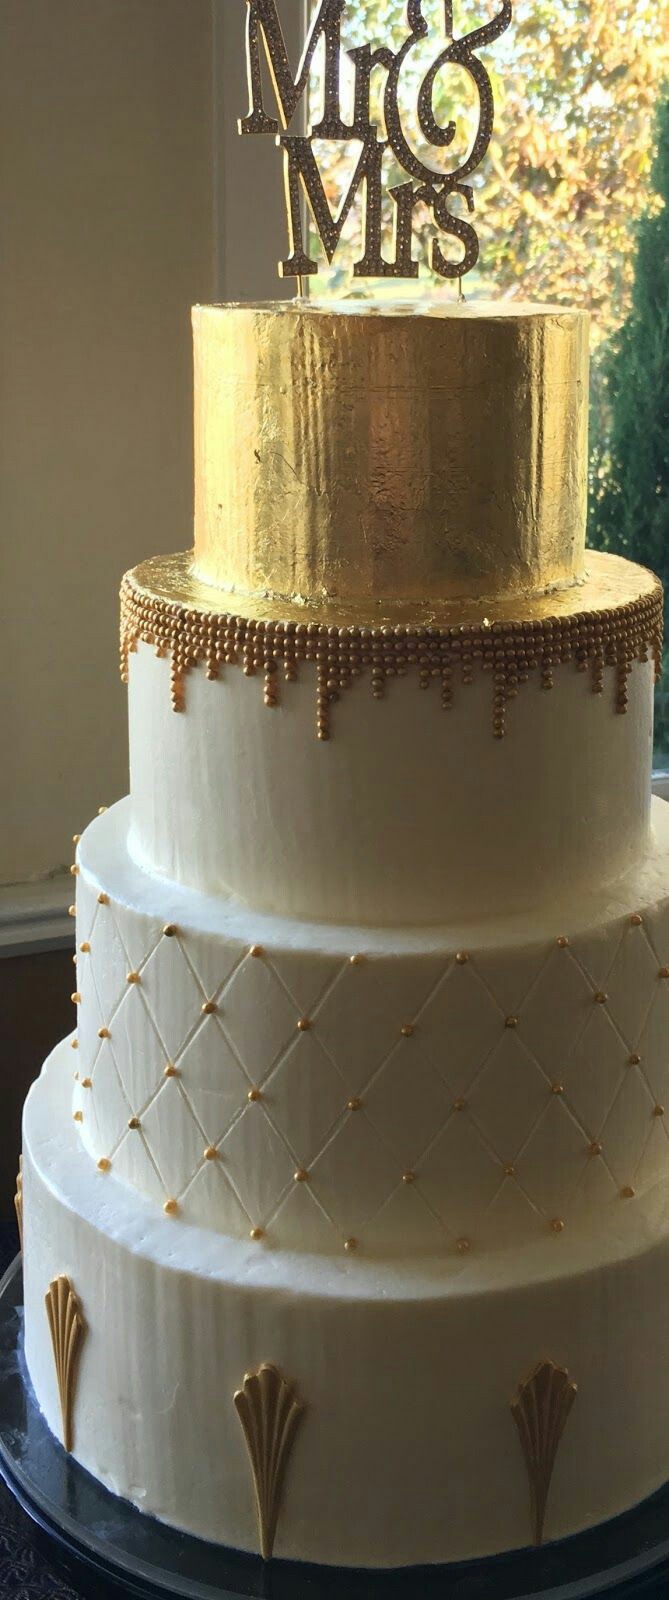 کیک تمام فوندانت با مروارید های طلایی